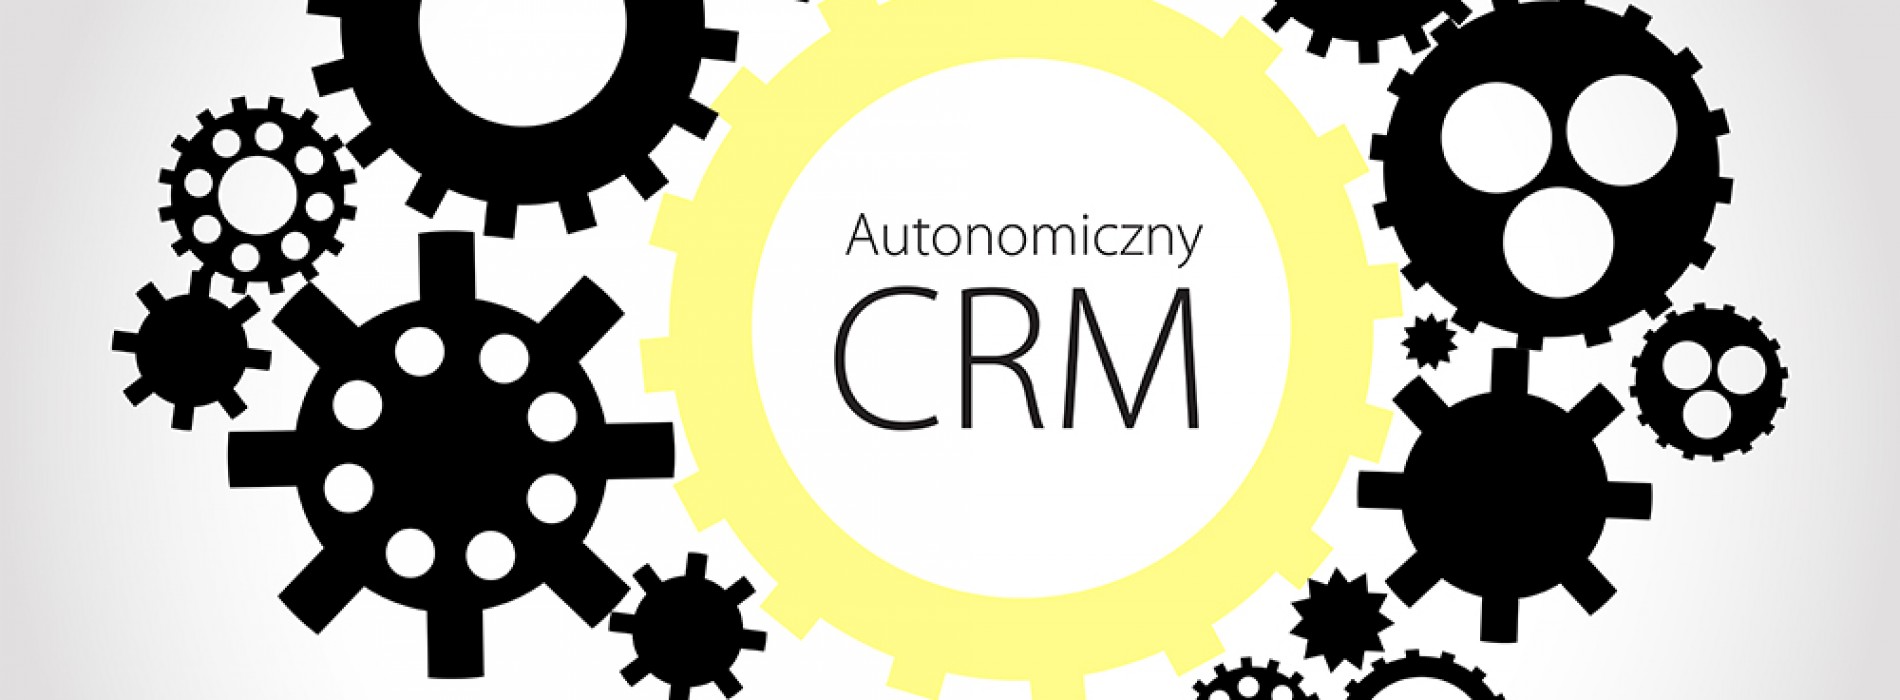 Dlaczego powinieneś wiedzieć czym jest Autonomiczny CRM?